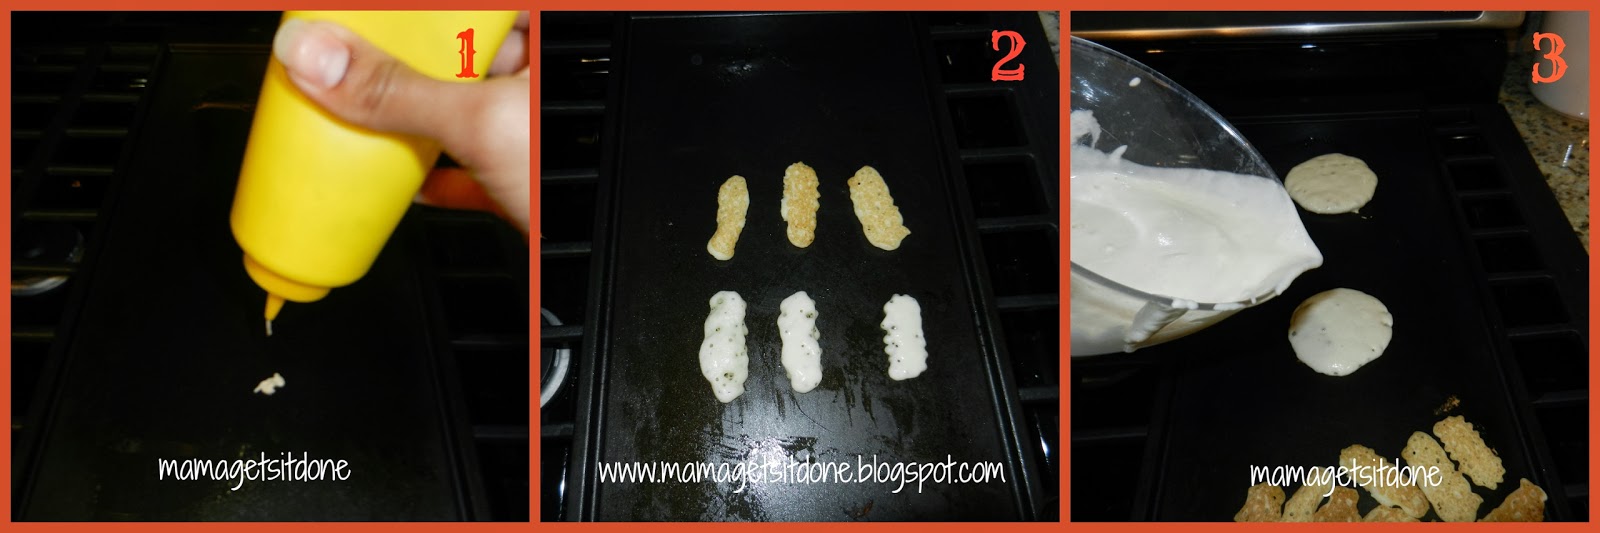 http://3.bp.blogspot.com/-9bC7l-rBFpo/UnkMTnIDFvI/AAAAAAAAG6A/cfpX3oIFLrk/s1600/Turkey+pancakes+Collage.jpg